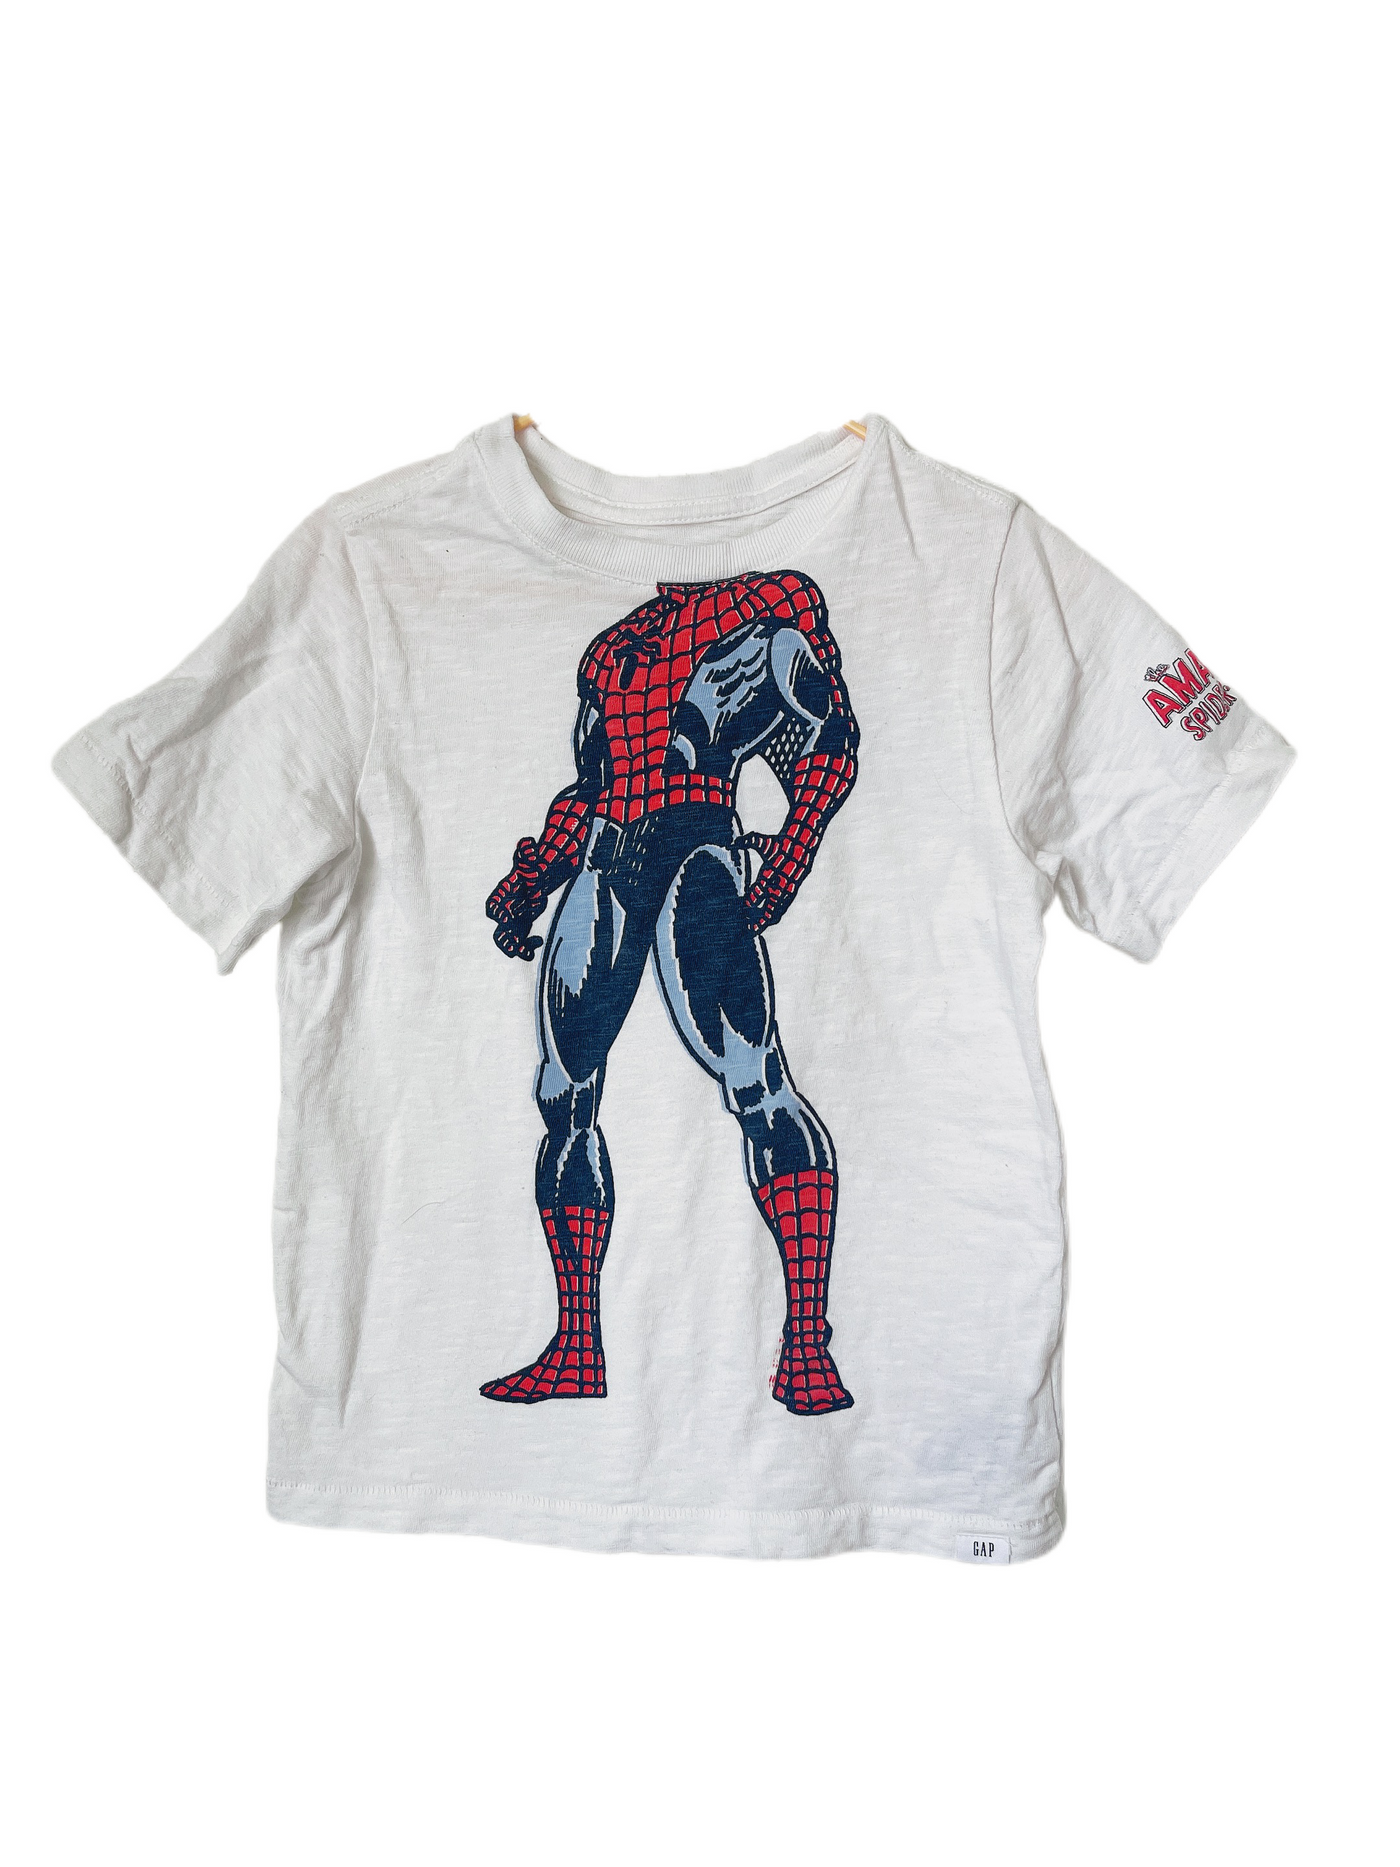 Gap Marvel Iron Man T Shirt(5Y)